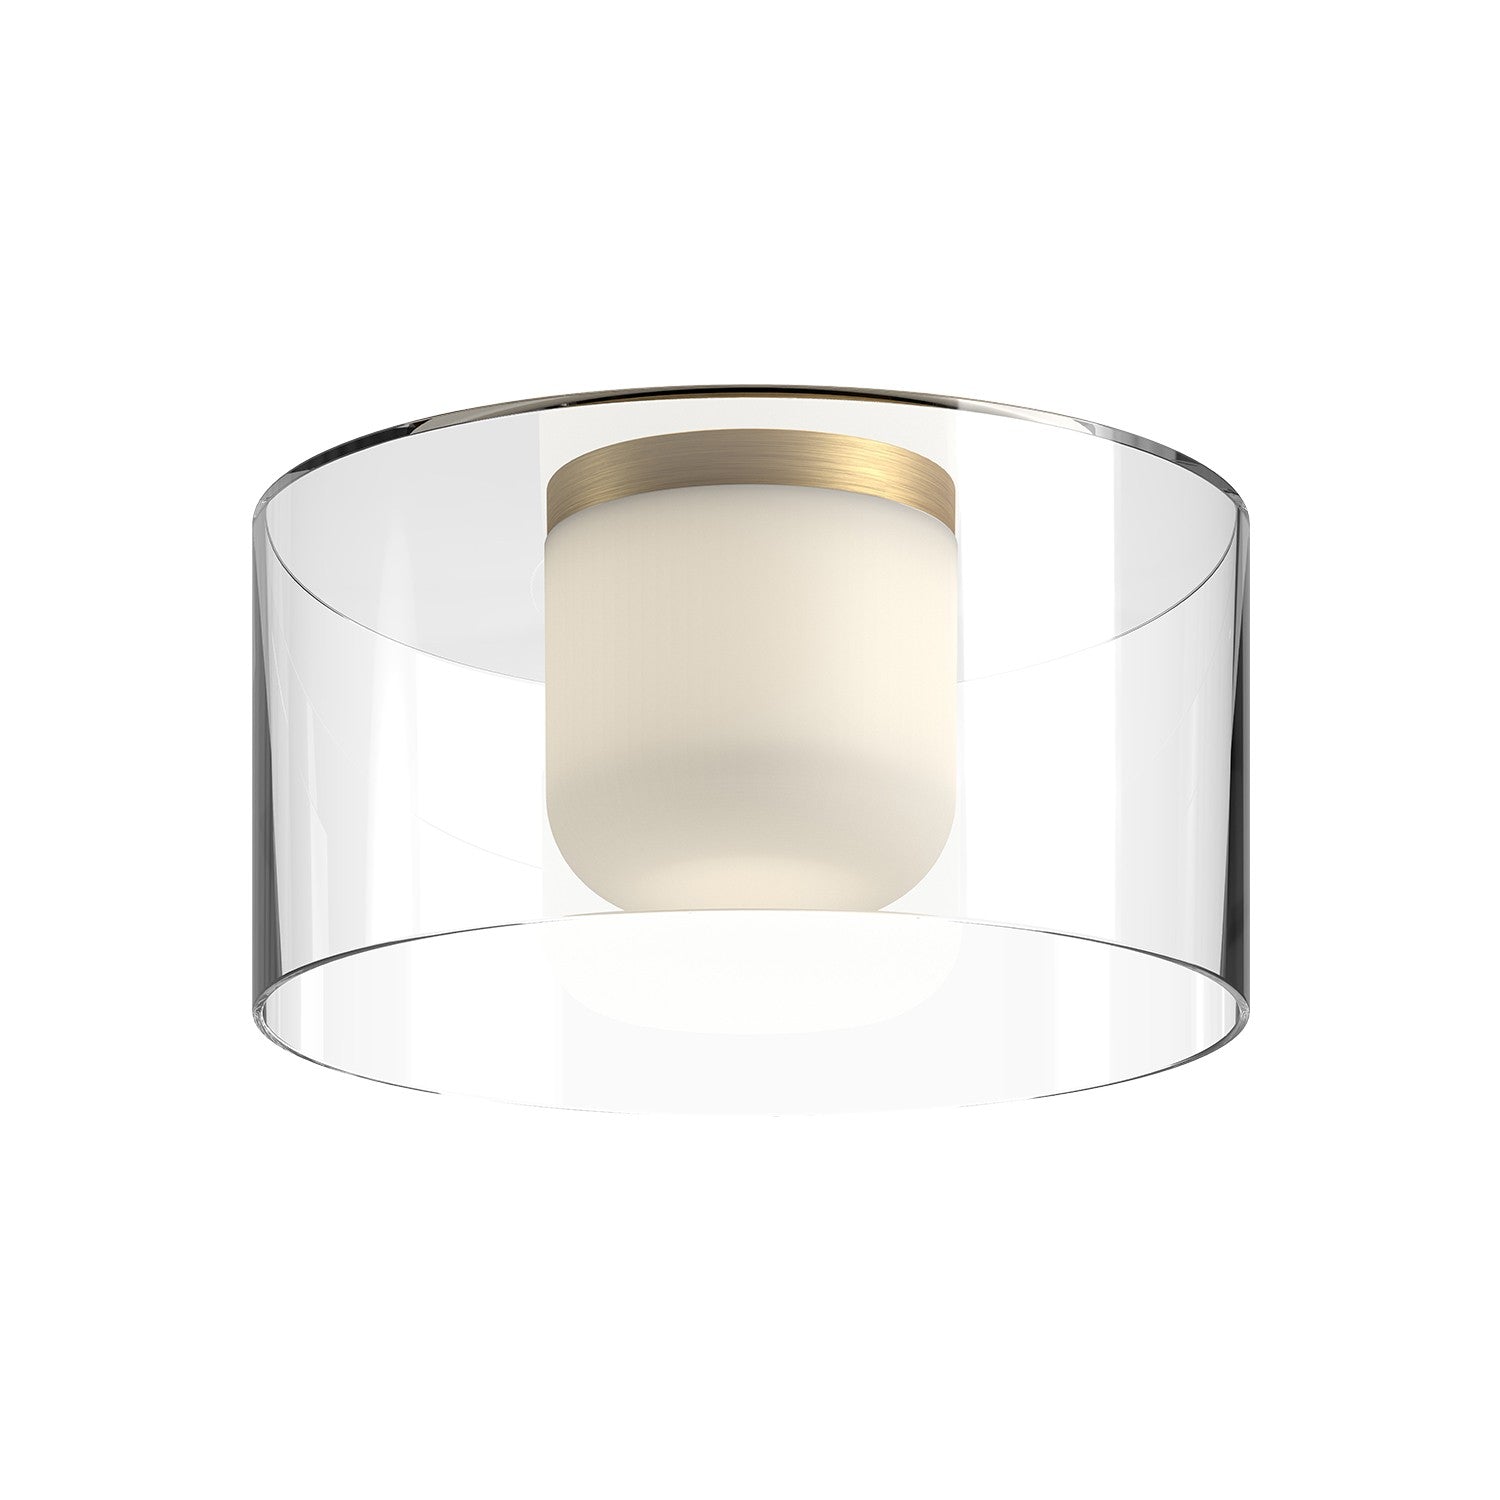 Kuzco Lighting - FM53512-BG/CL - LED Flush Mount - Birch - Brushed Gold/Clear